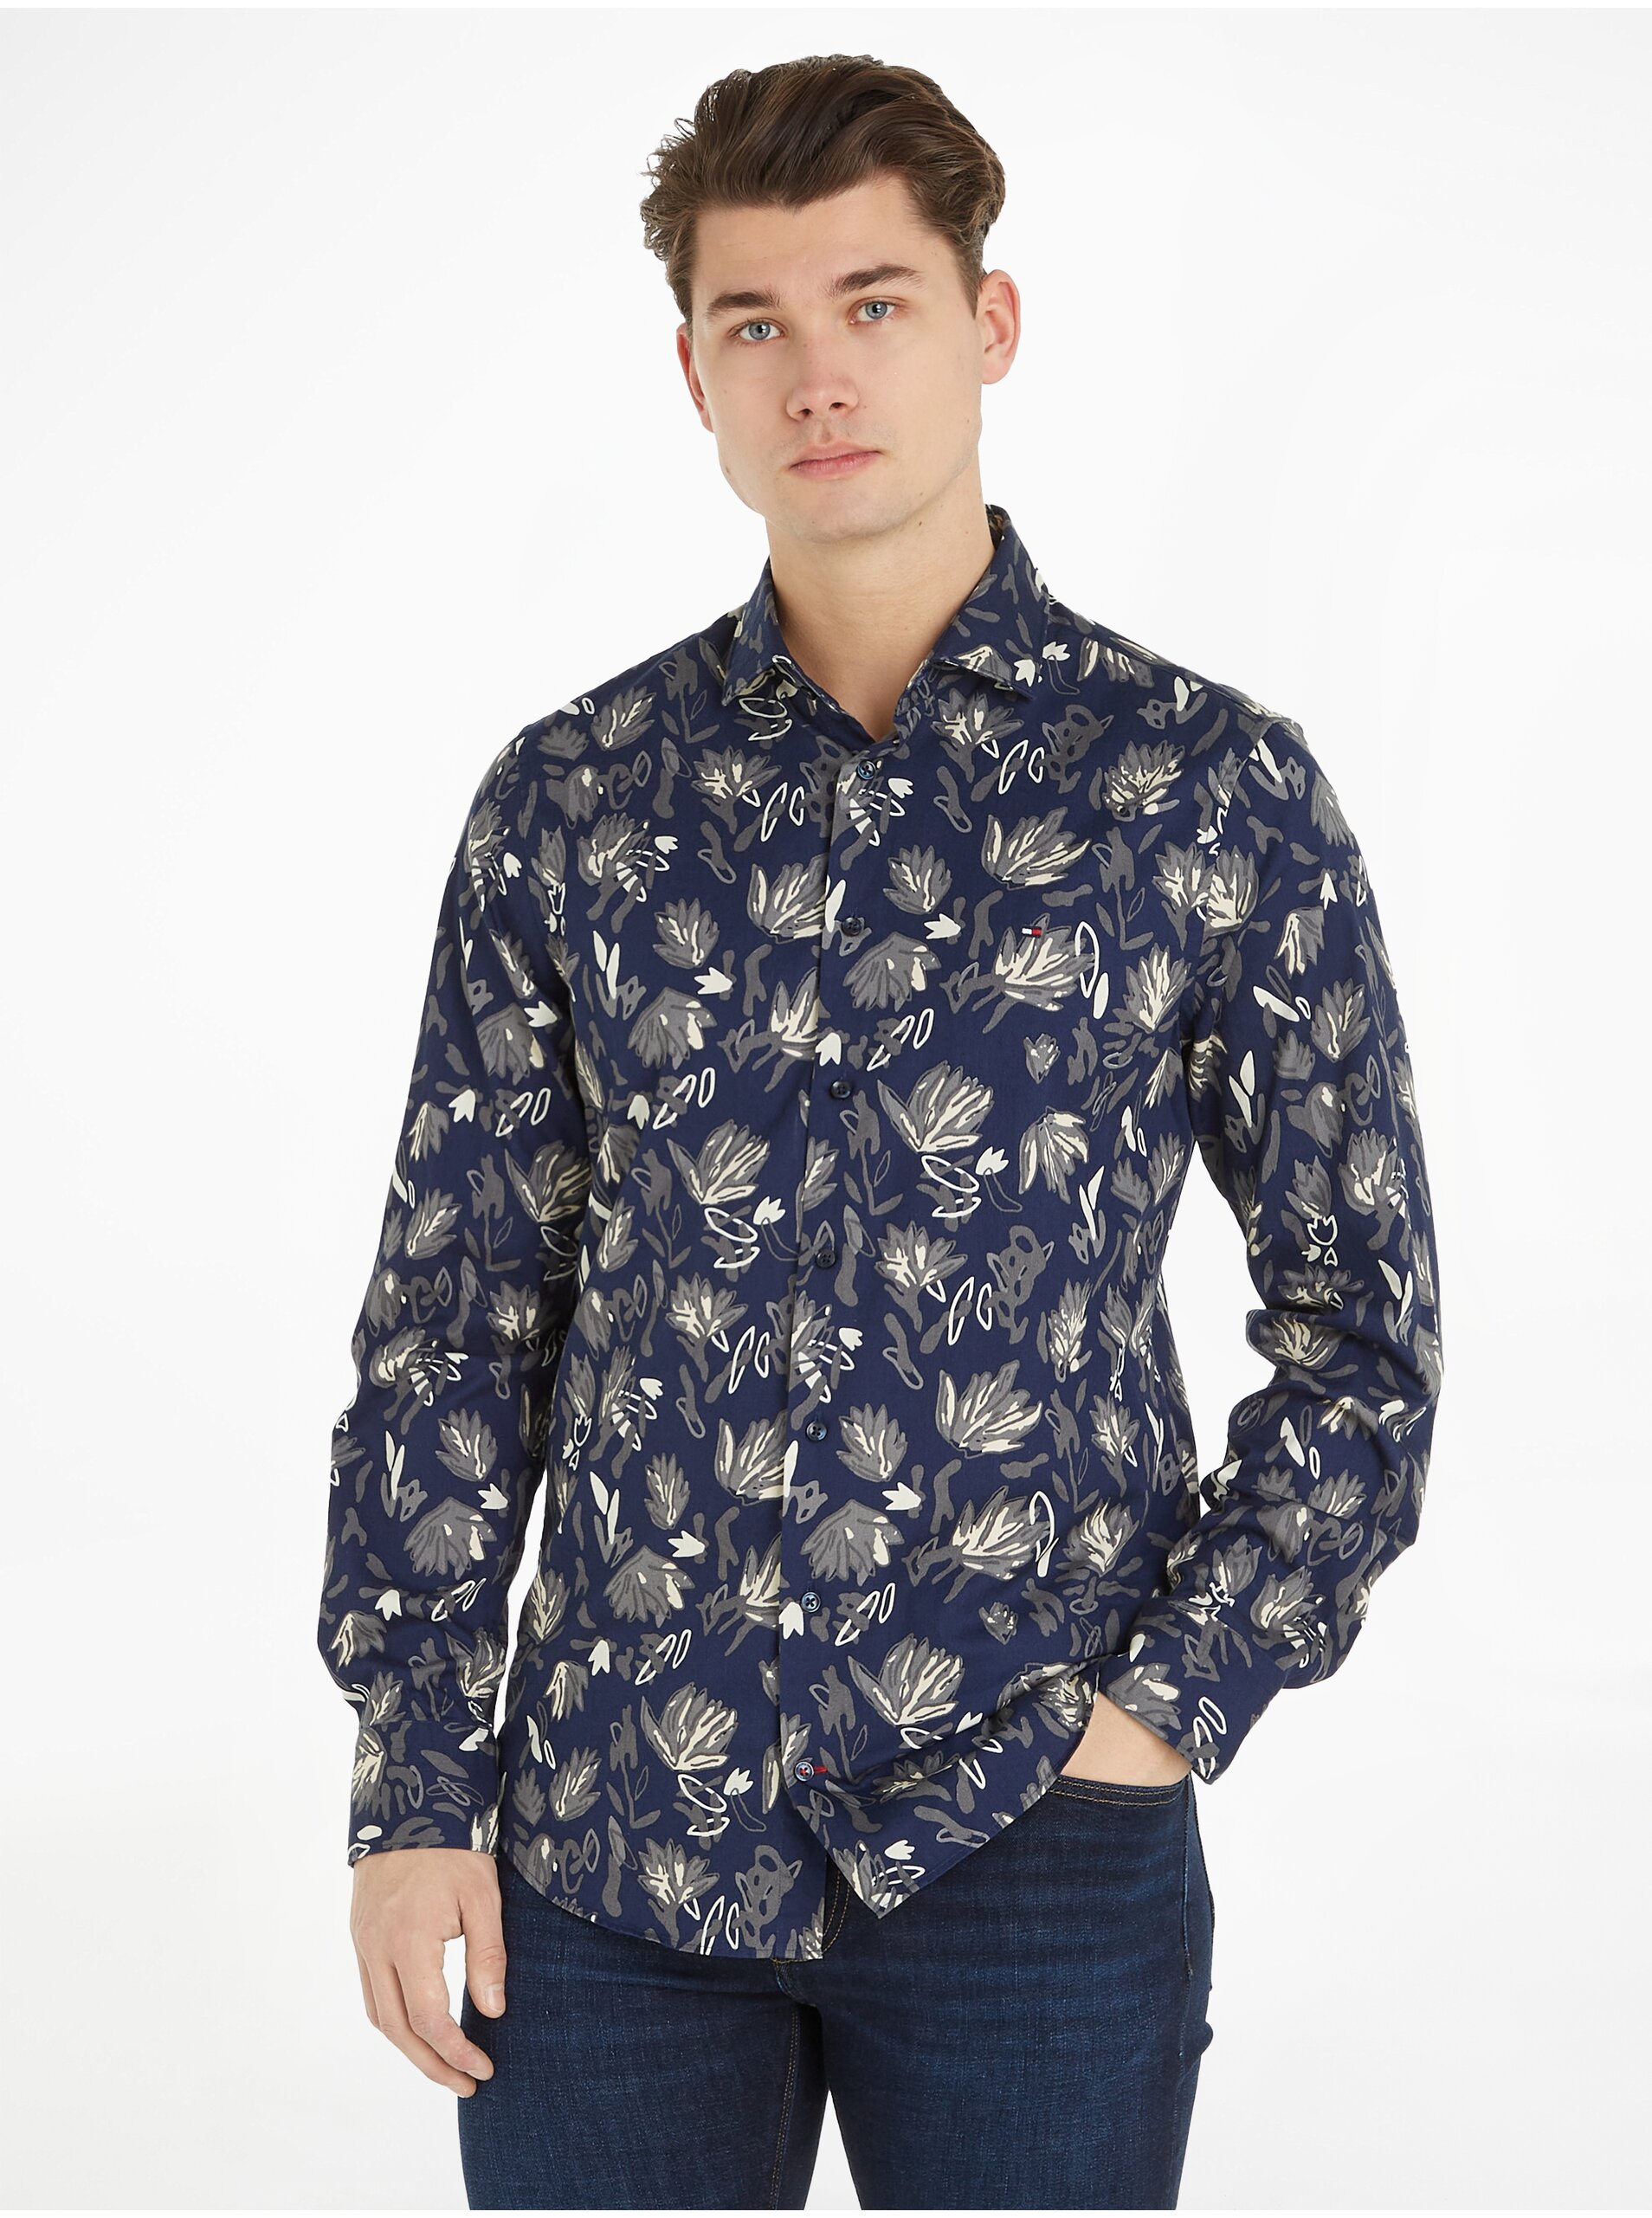 Lacno Tmavomodrá pánska vzorovaná košeľa Tommy Hilfiger Floral Print